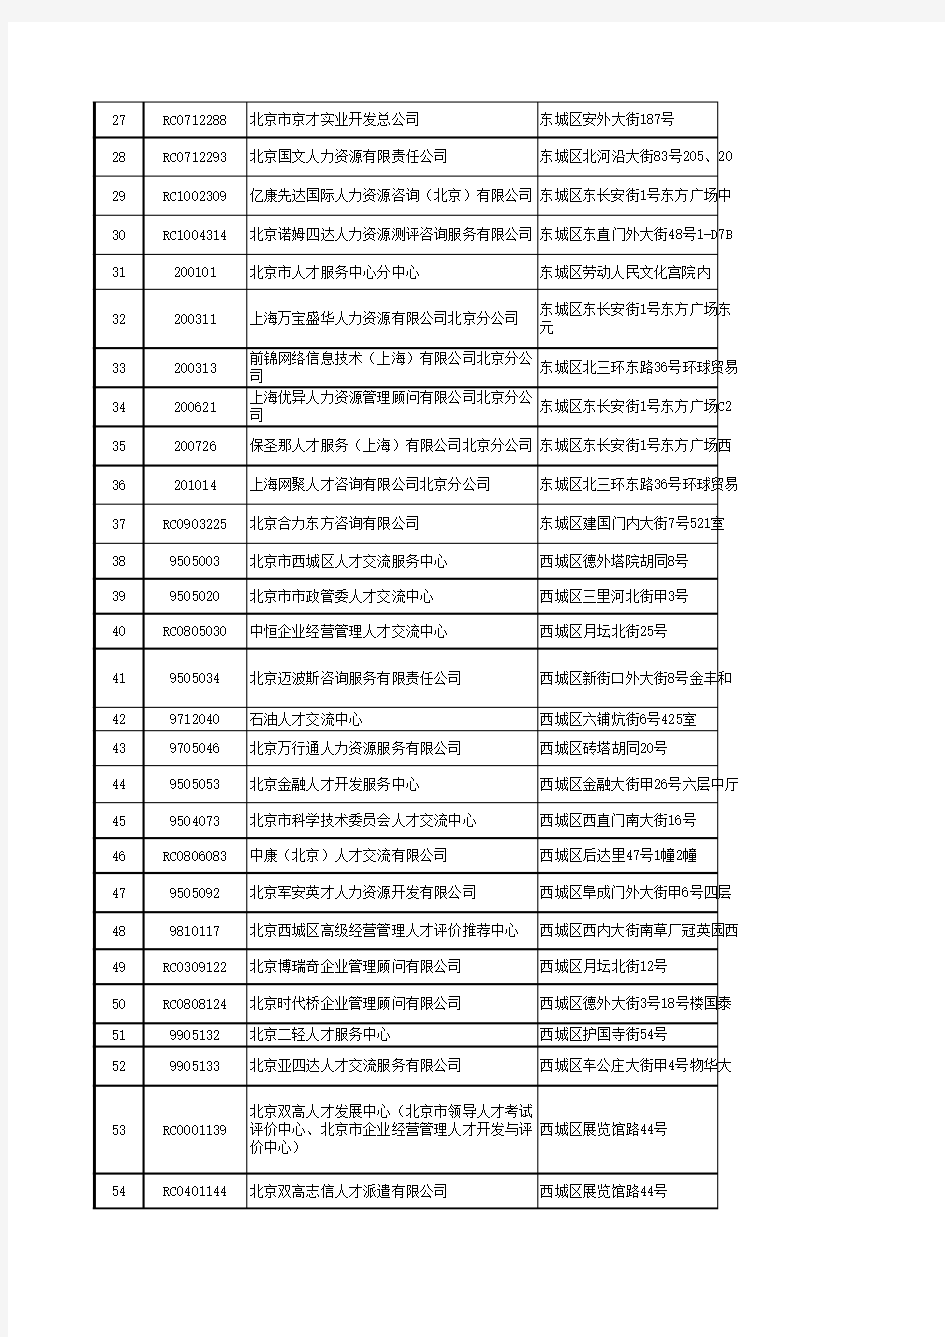 中国主要城市人才中介机构一览表